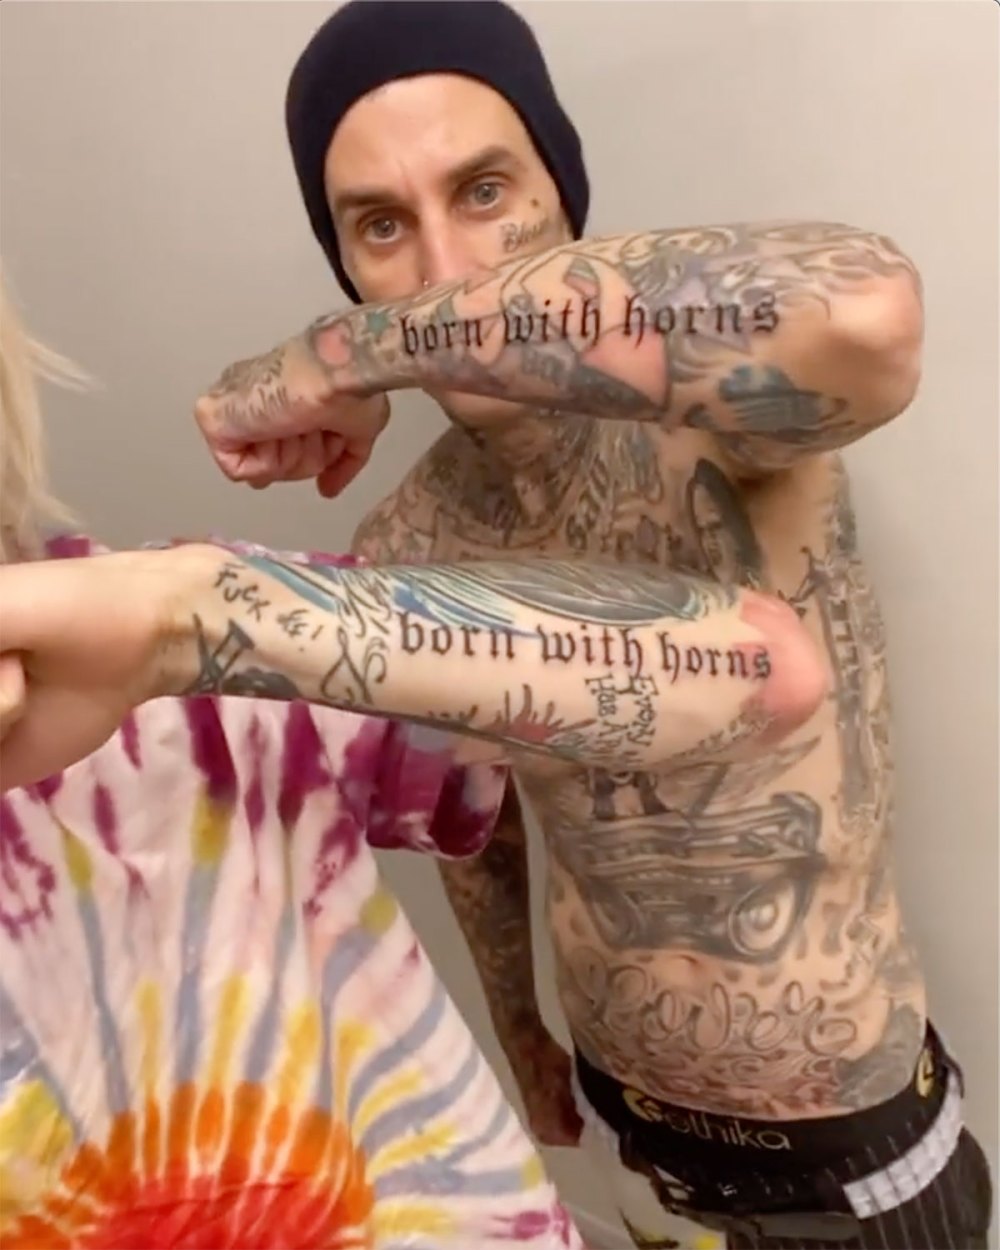 Travis Barker Machine Gun Kelly Get Matching Tattoos Born With Horns Album